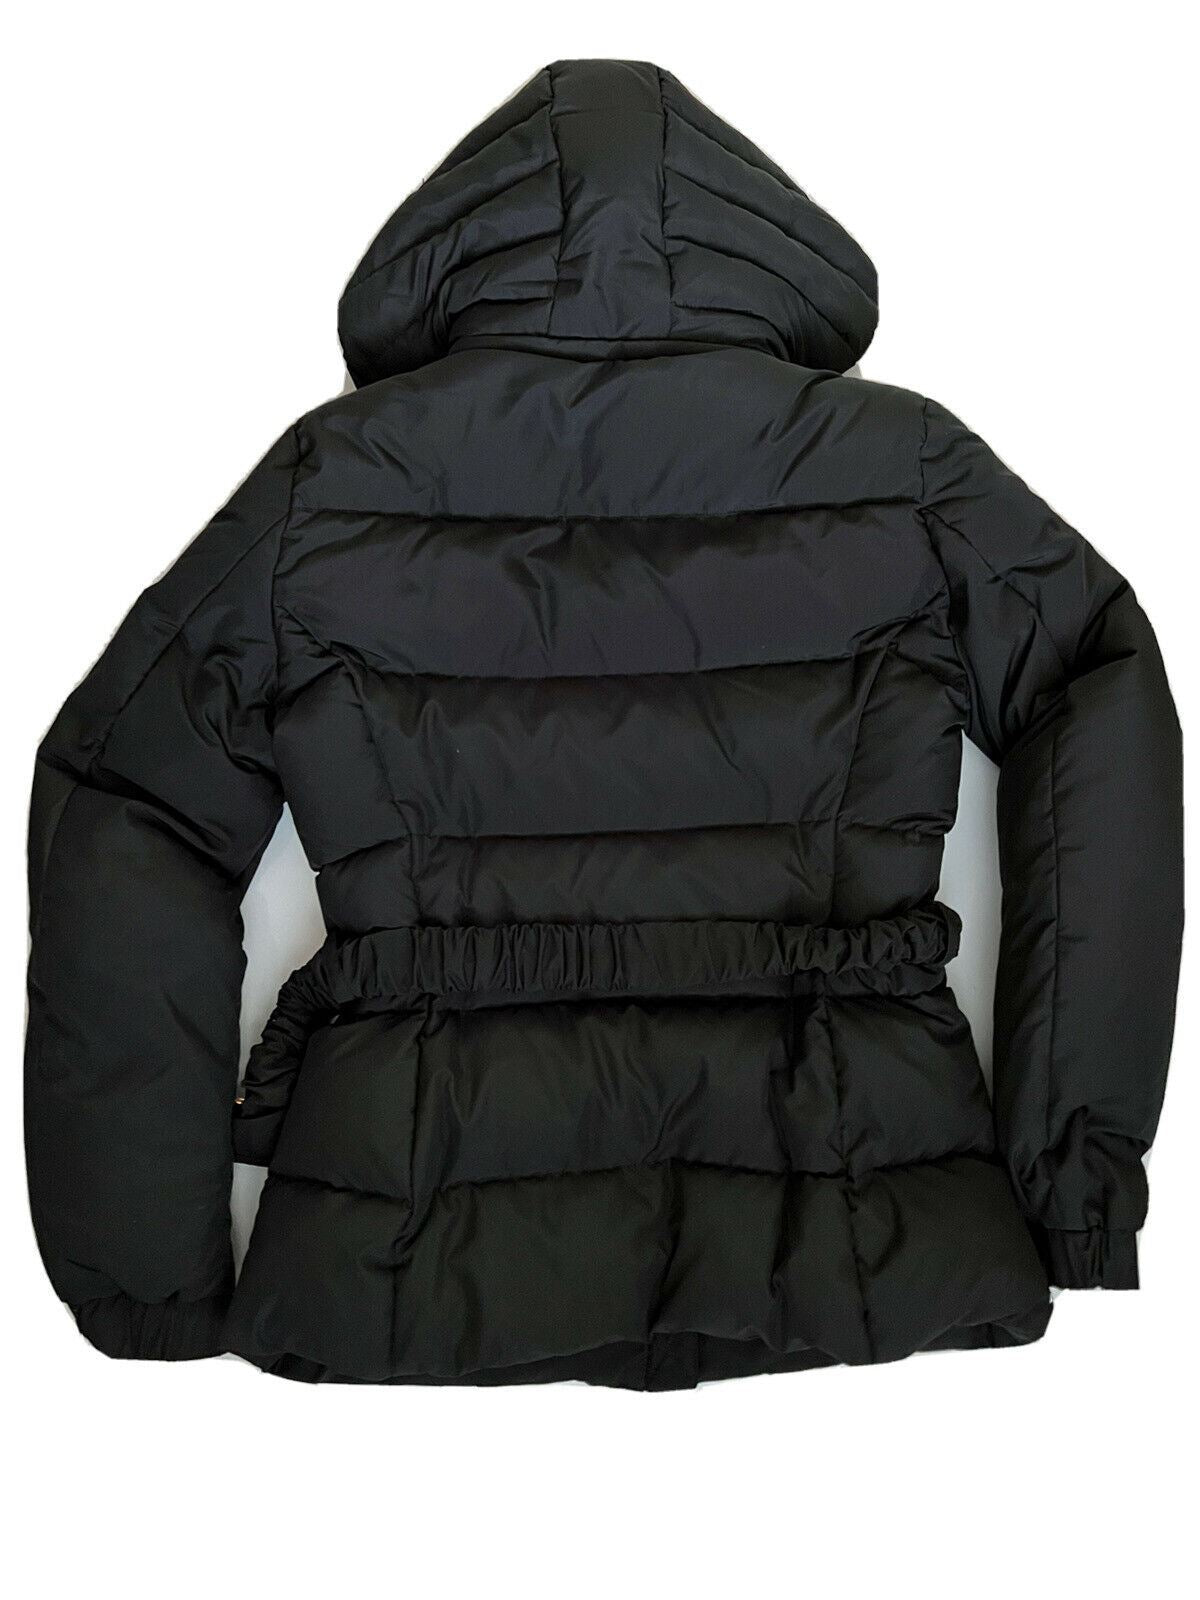 Женская черная пуховая куртка Versace NWT 1195 долларов США 4 США (40 евро) A88779S Италия 